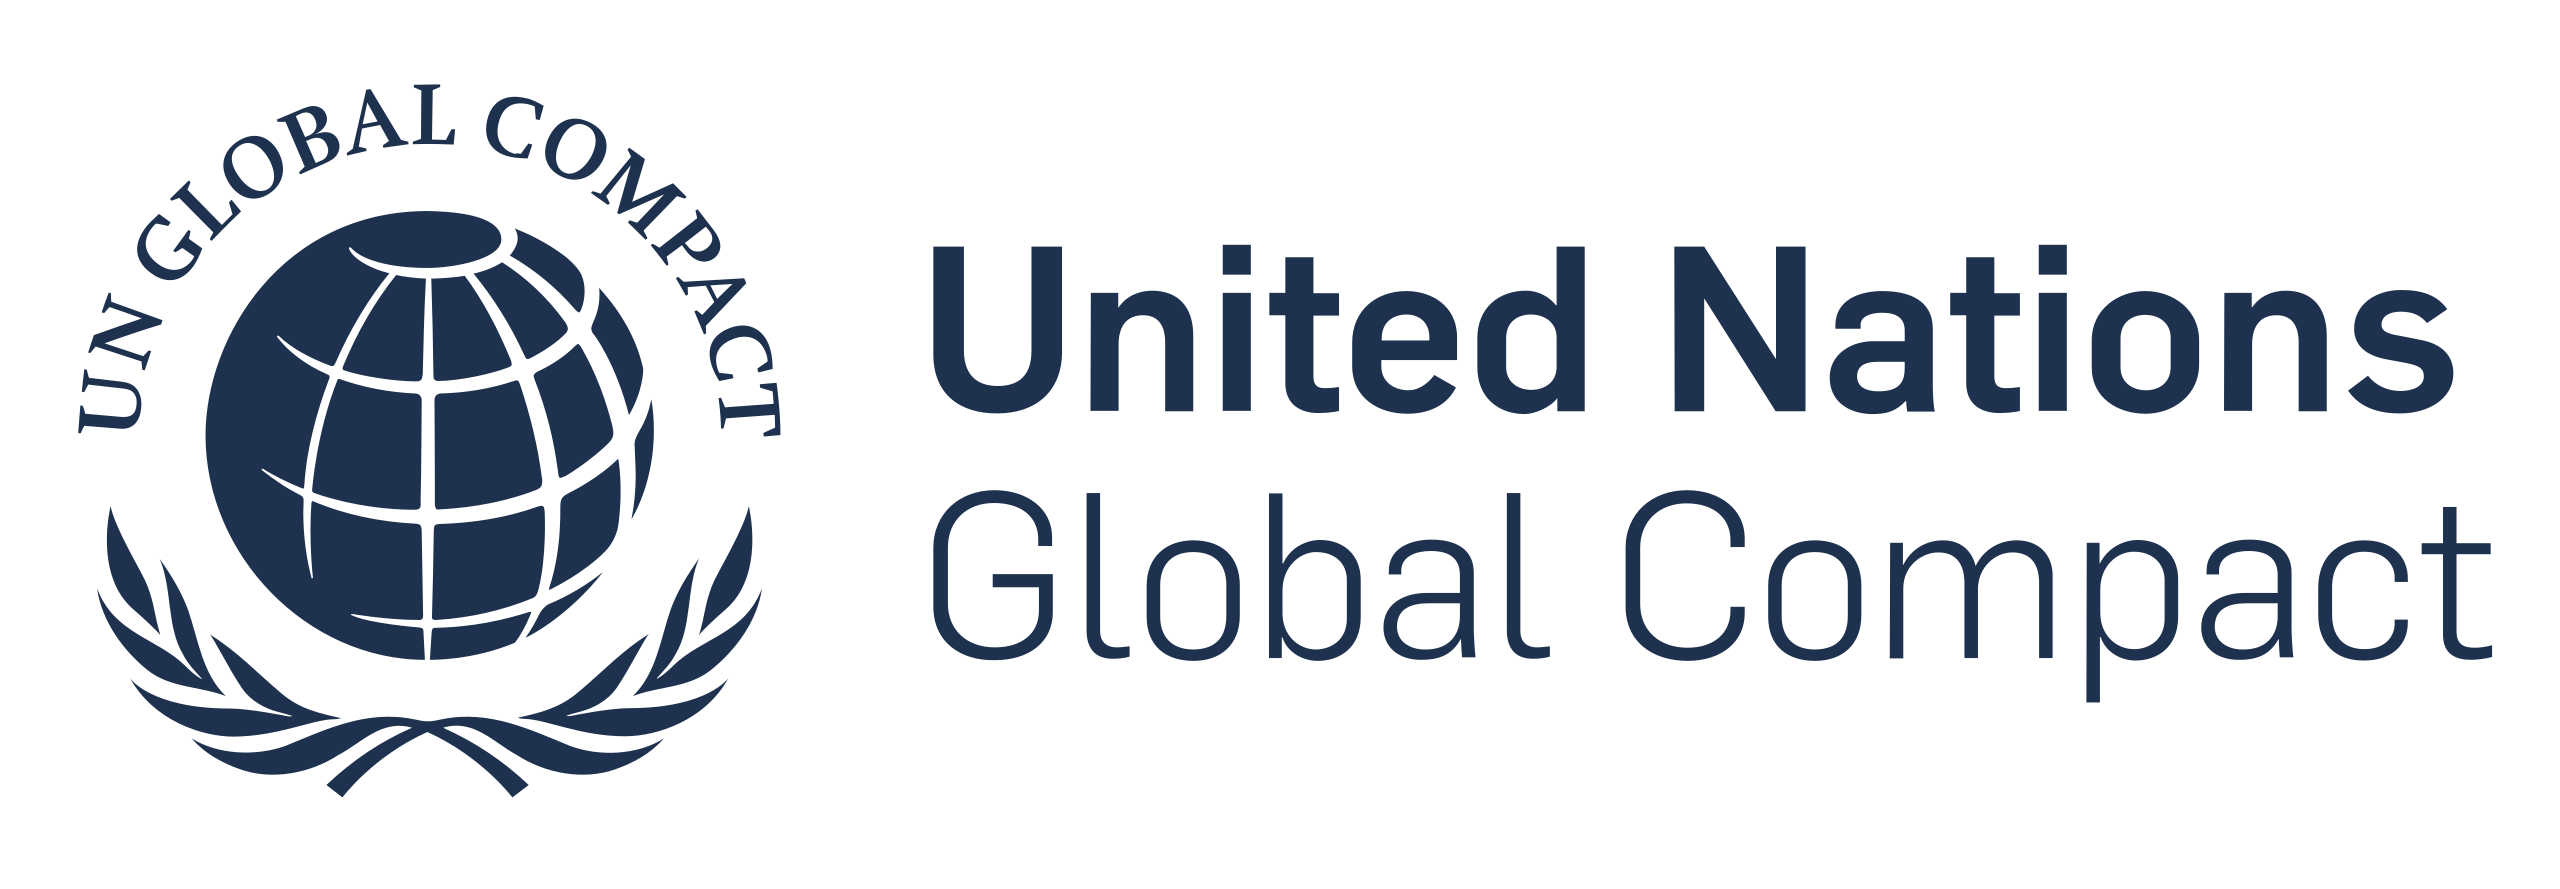 Pacte mundial de les Nacions Unides